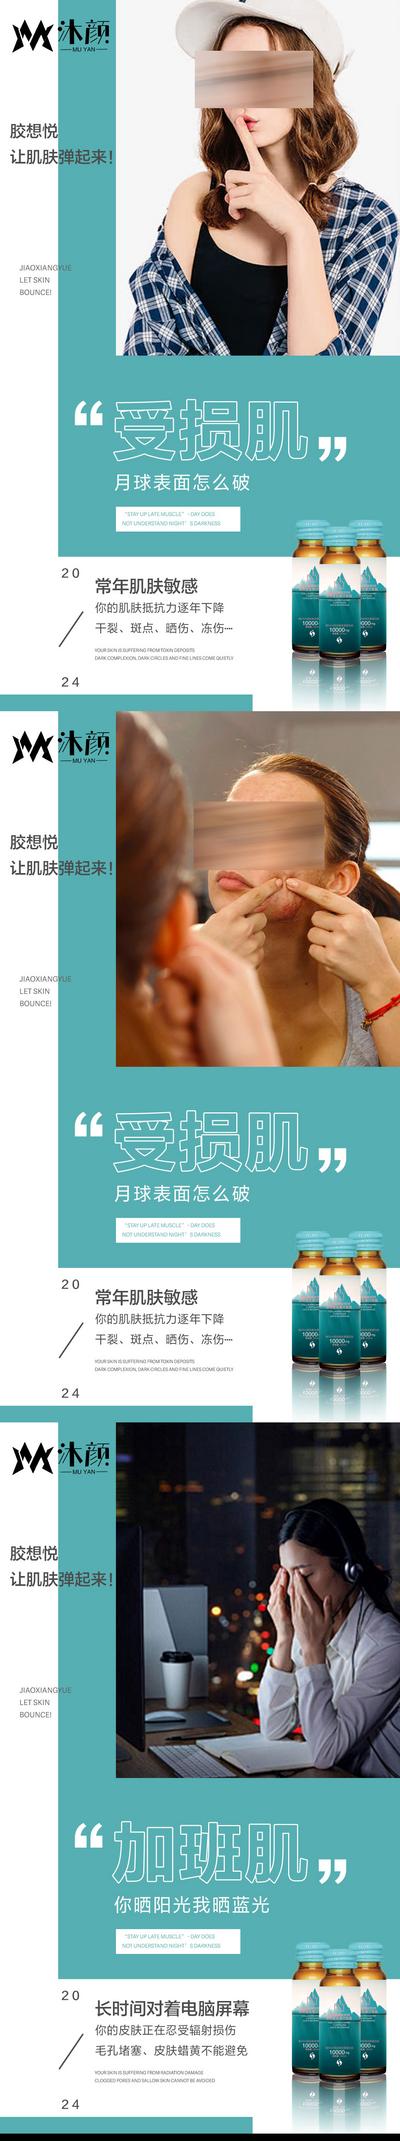 南门网 广告 海报 医美 精华 人物 系列 微商 胶原蛋白肽 功效 健康 女性 减肥 美容 能量